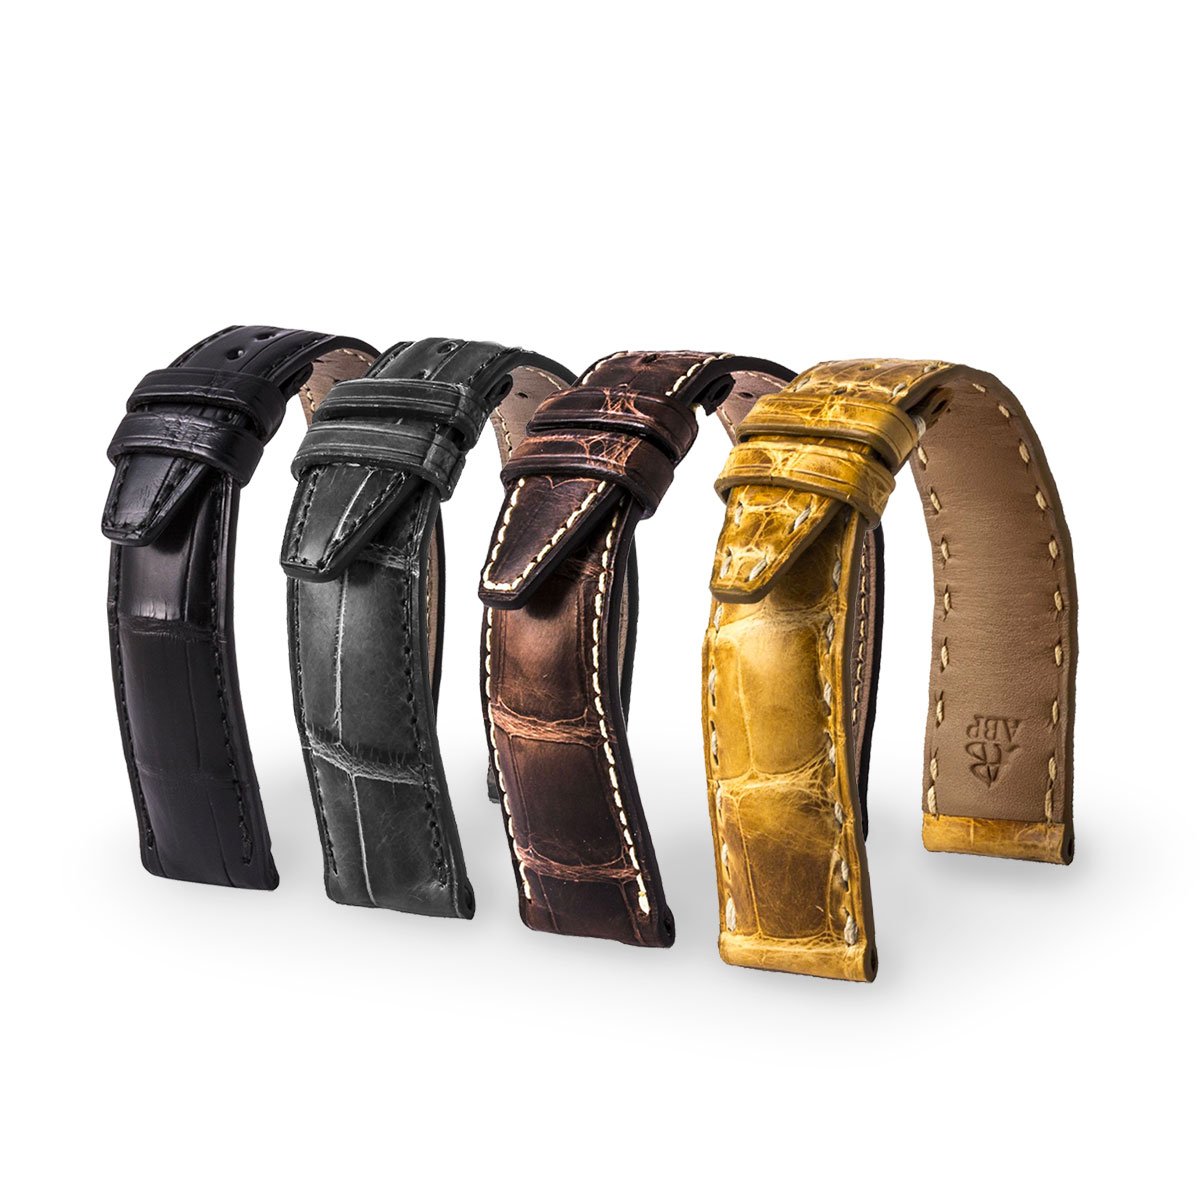 IWC Portuguese - Bracelet pour montre cuir - Alligator tannage spécial waxé (noir, gris, marron) - watch band leather strap - ABP Concept -